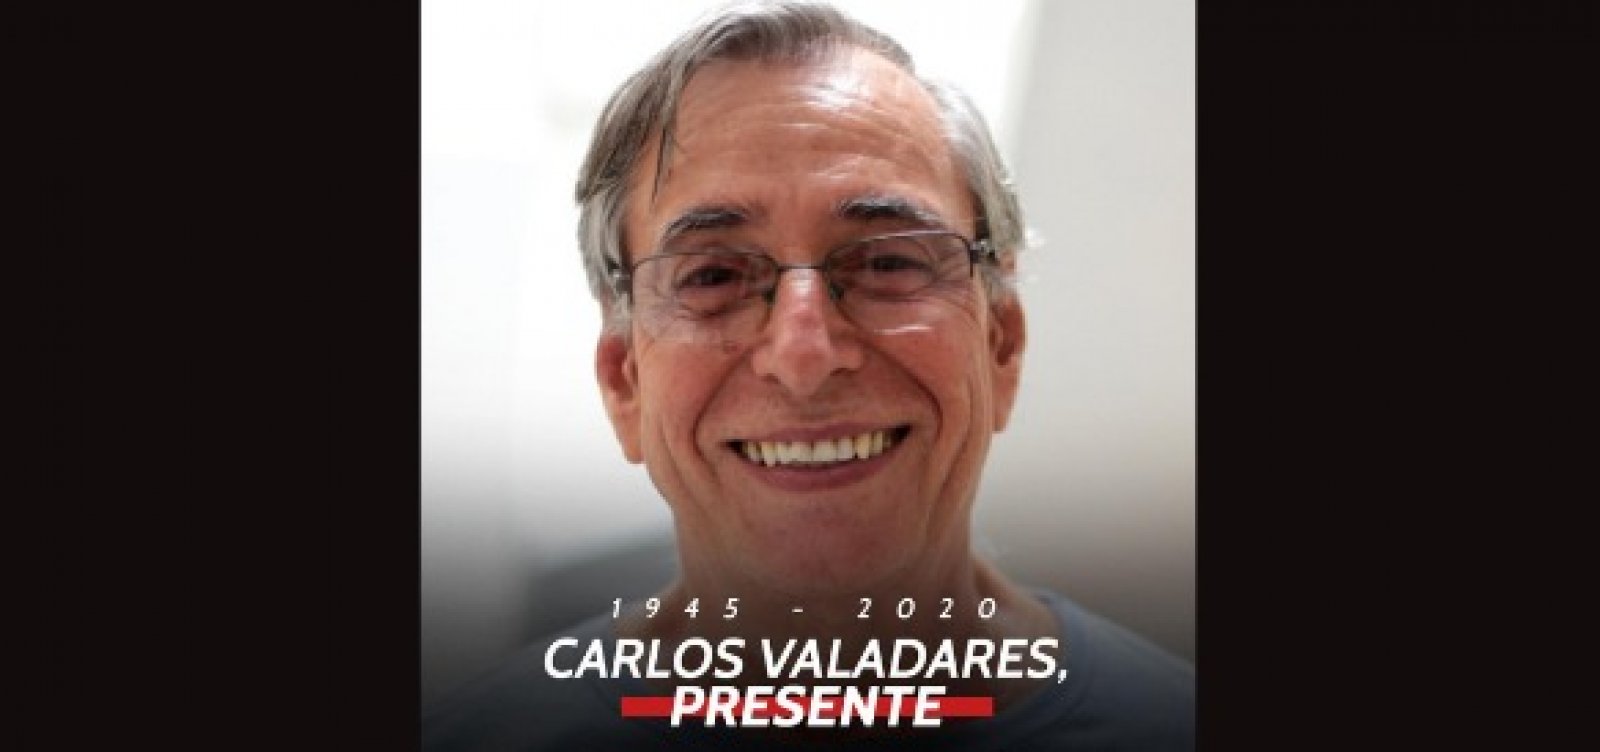 Carlos Valadares deixa legado de atuação no poder público e dedicação à luta contra as injustiças